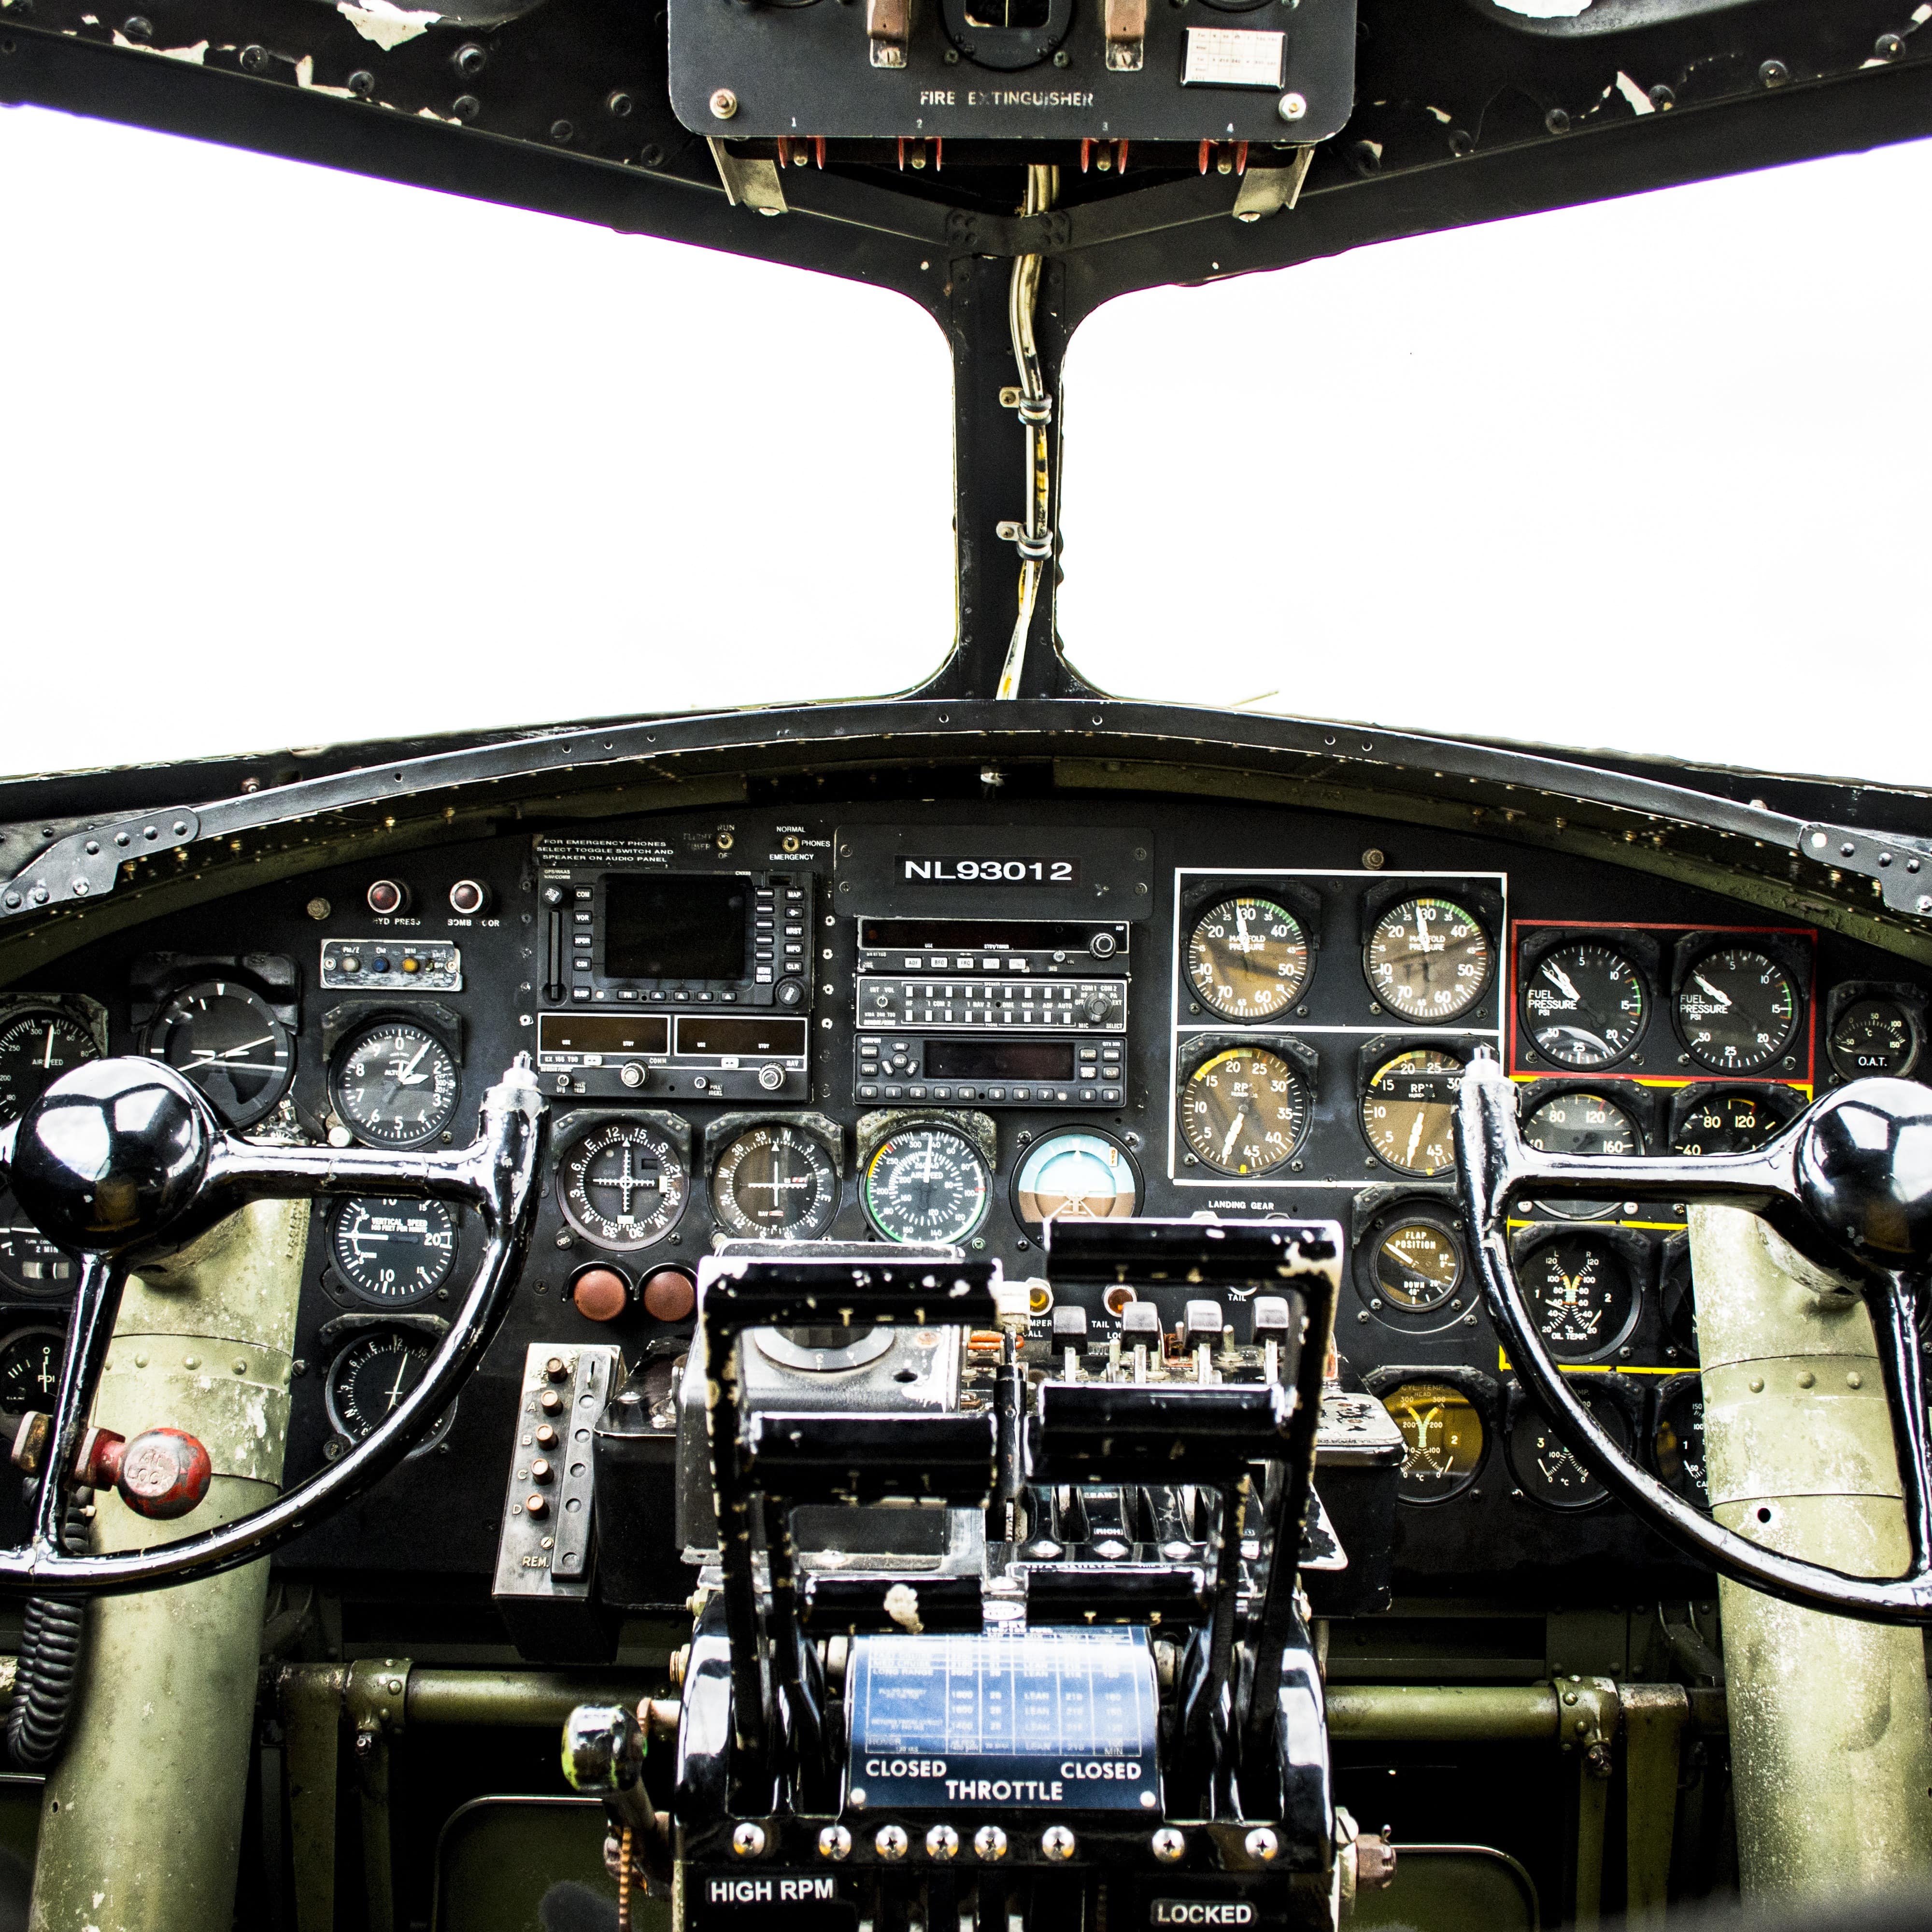 Inside cockpit of WWII bomber